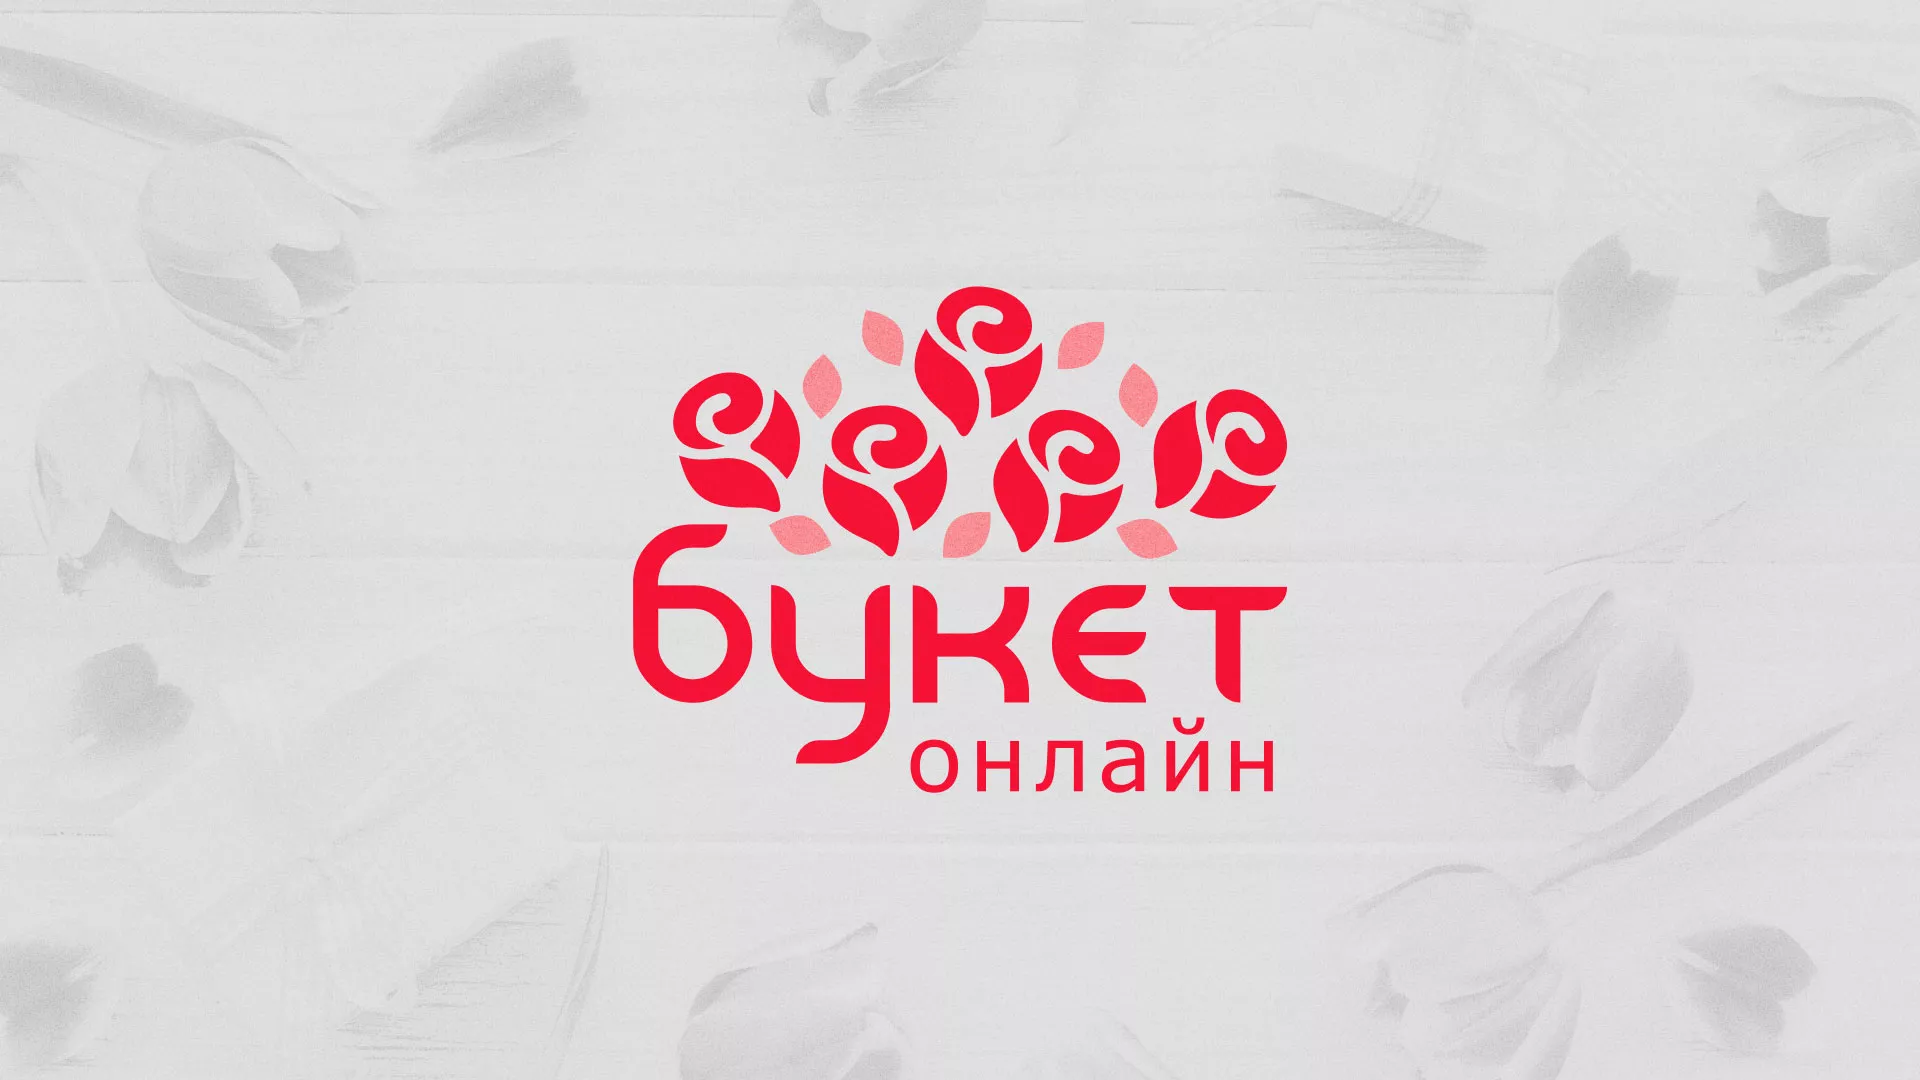 Создание интернет-магазина «Букет-онлайн» по цветам в Козельске